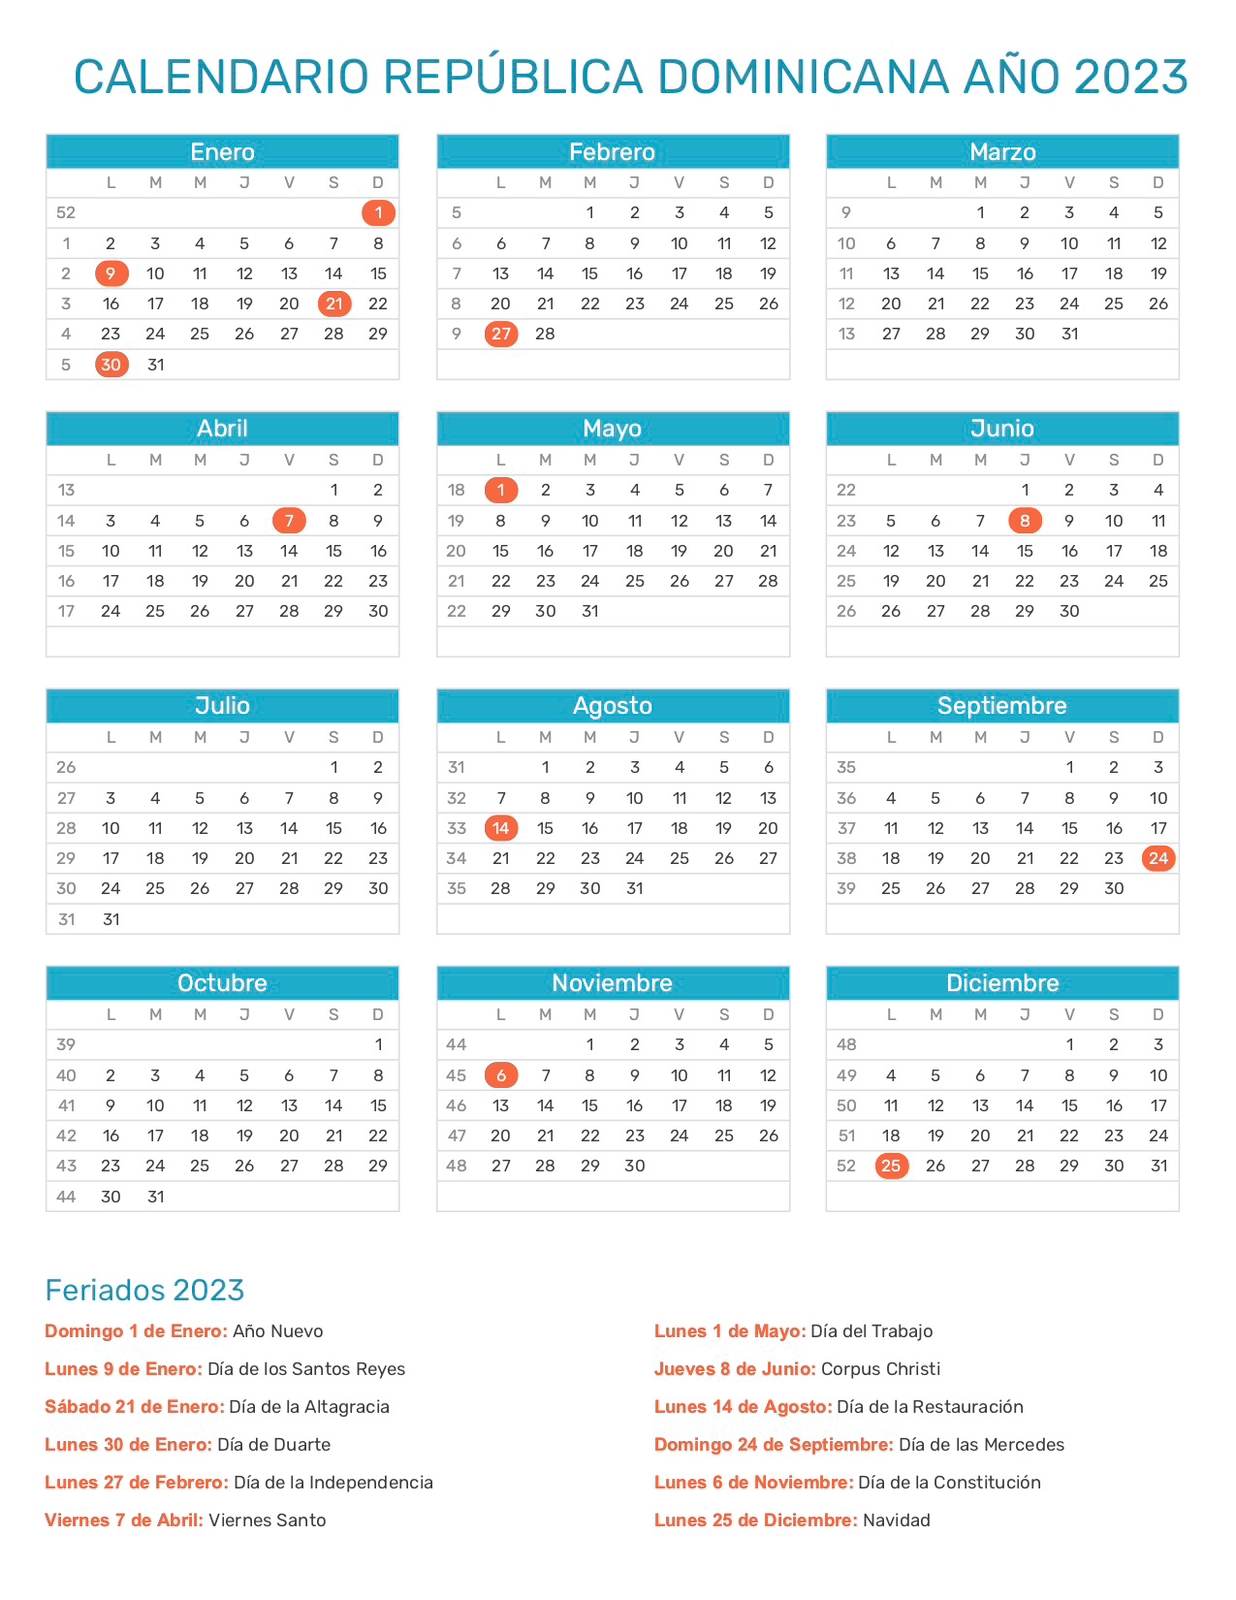 Conozca los días feriados y fines de semana largos del 2023